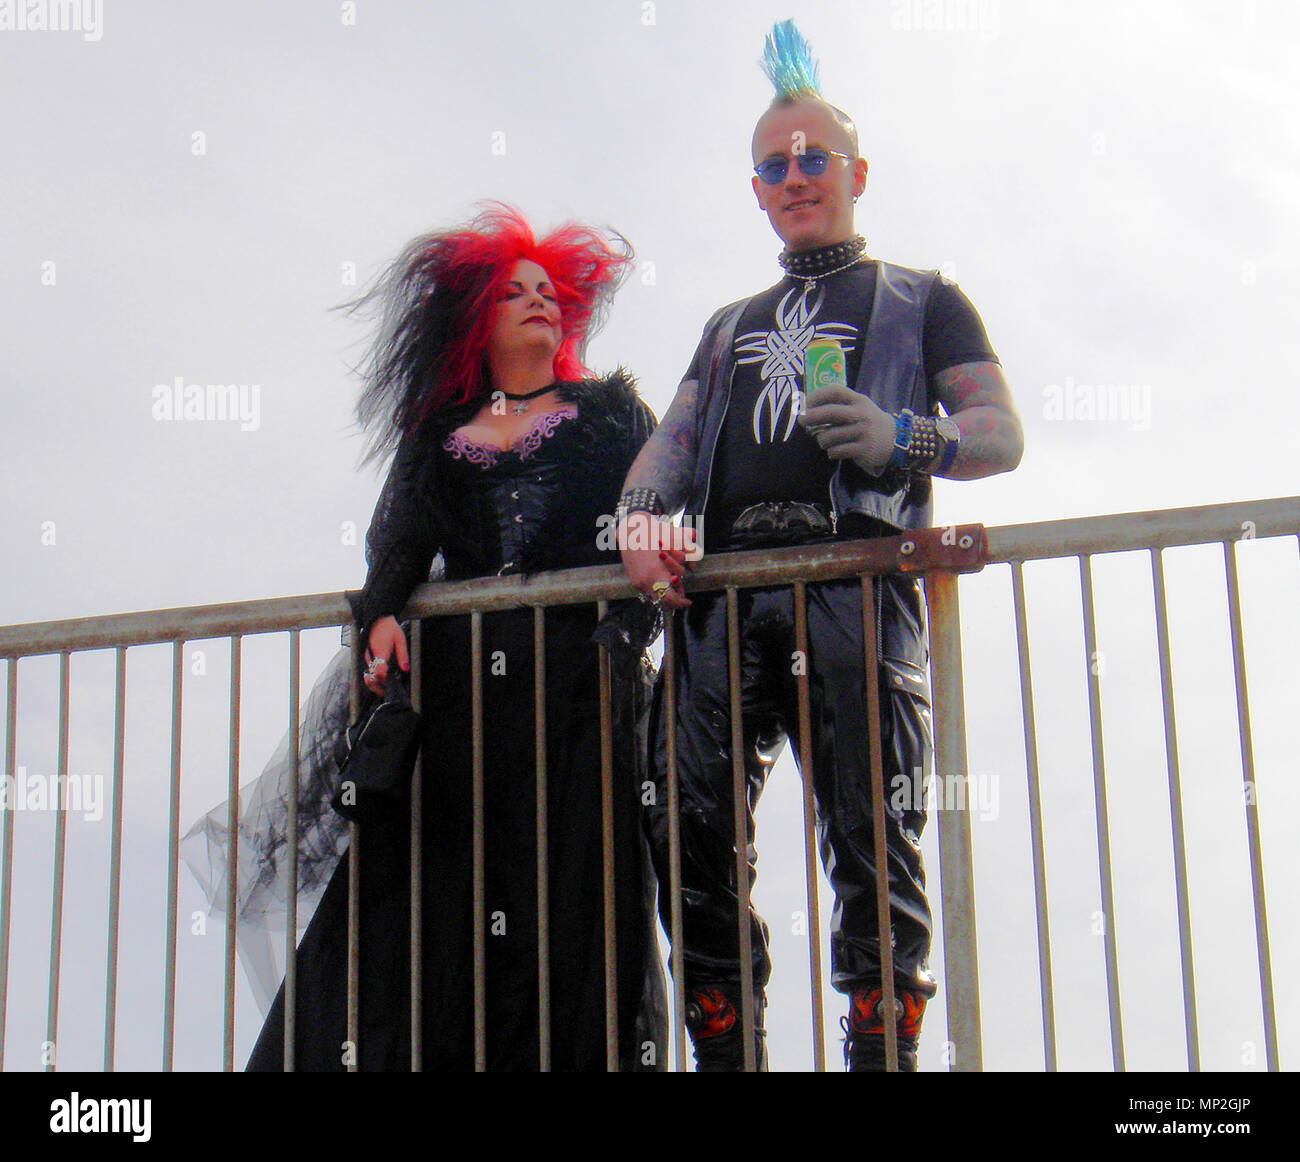 -Gothique punk costumes contrastés à l'assemblée annuelle du festival Goth à Whitby, dans le Yorkshire, UK Banque D'Images